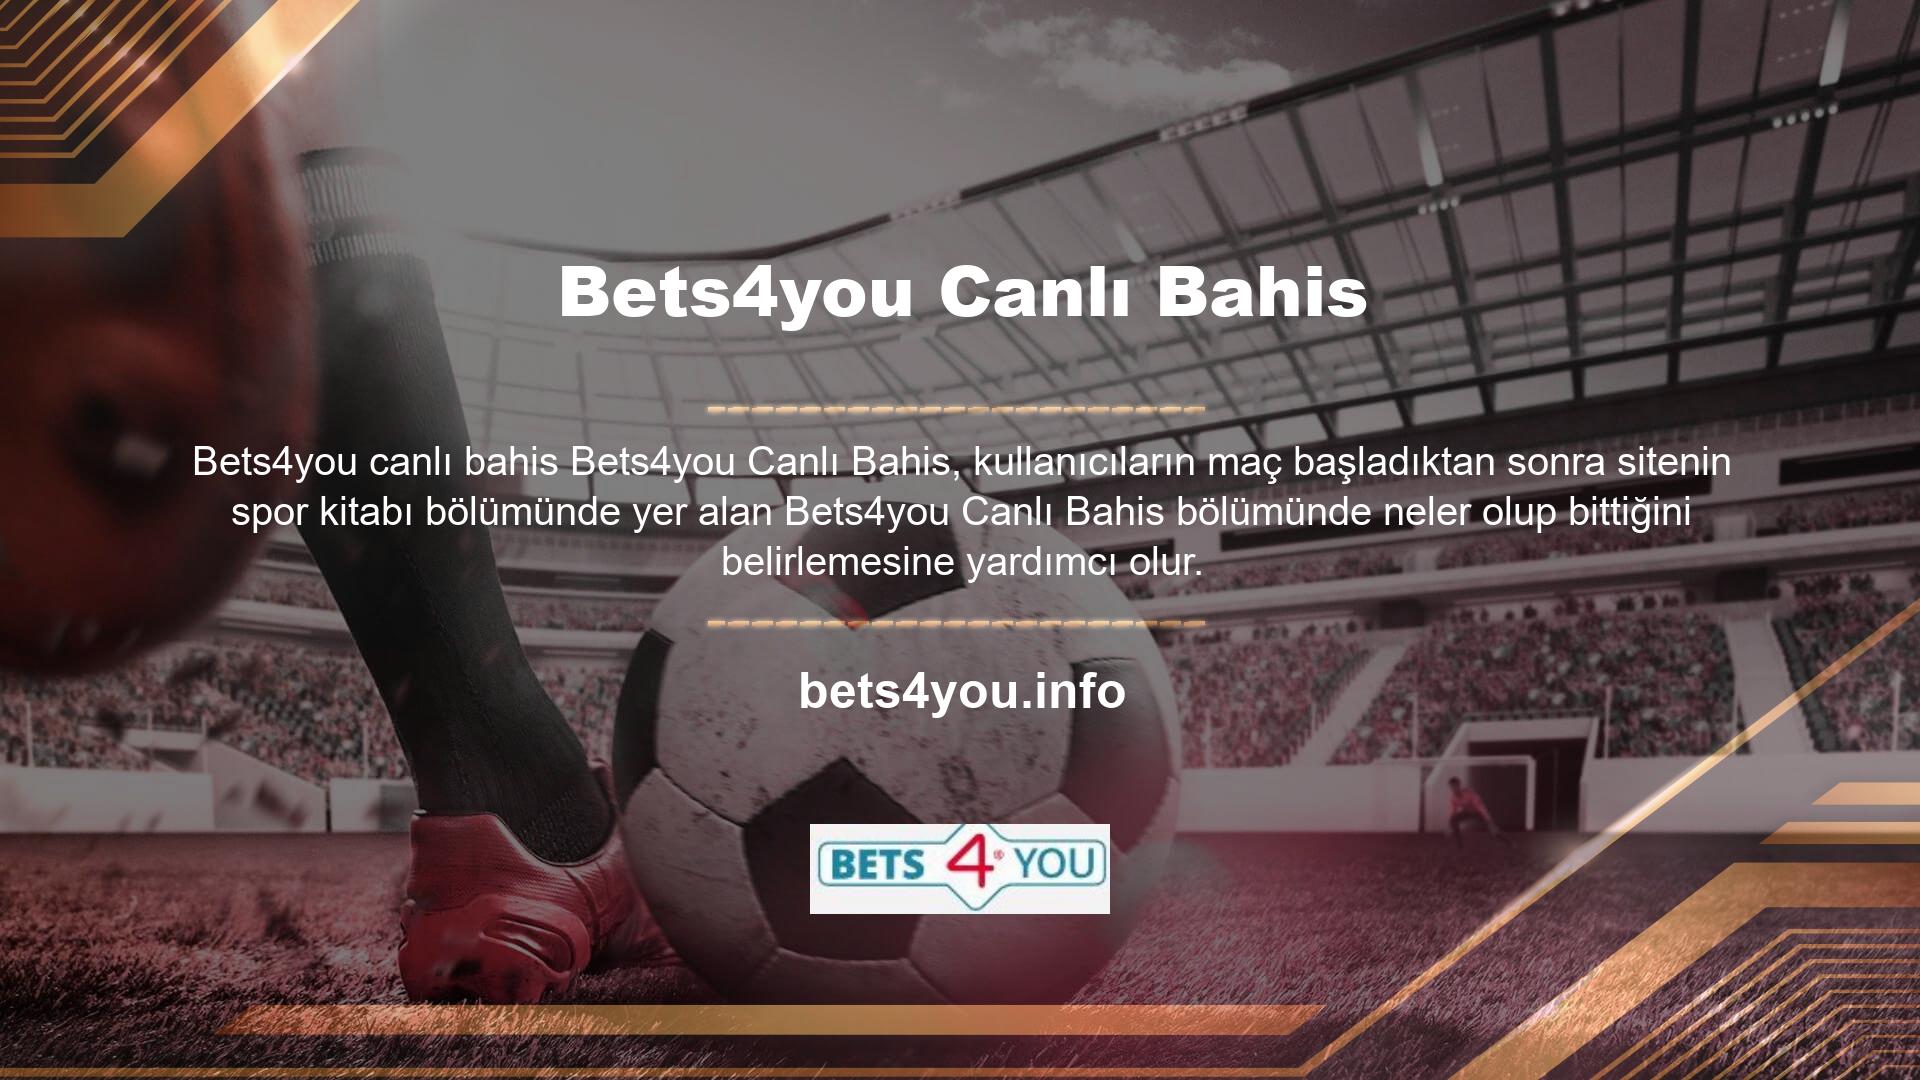 Bu platformu kullanarak Bets4you Bahis'e profesyonel olarak katılabilir ve Bets4you canlı bahis oynayabilirsiniz